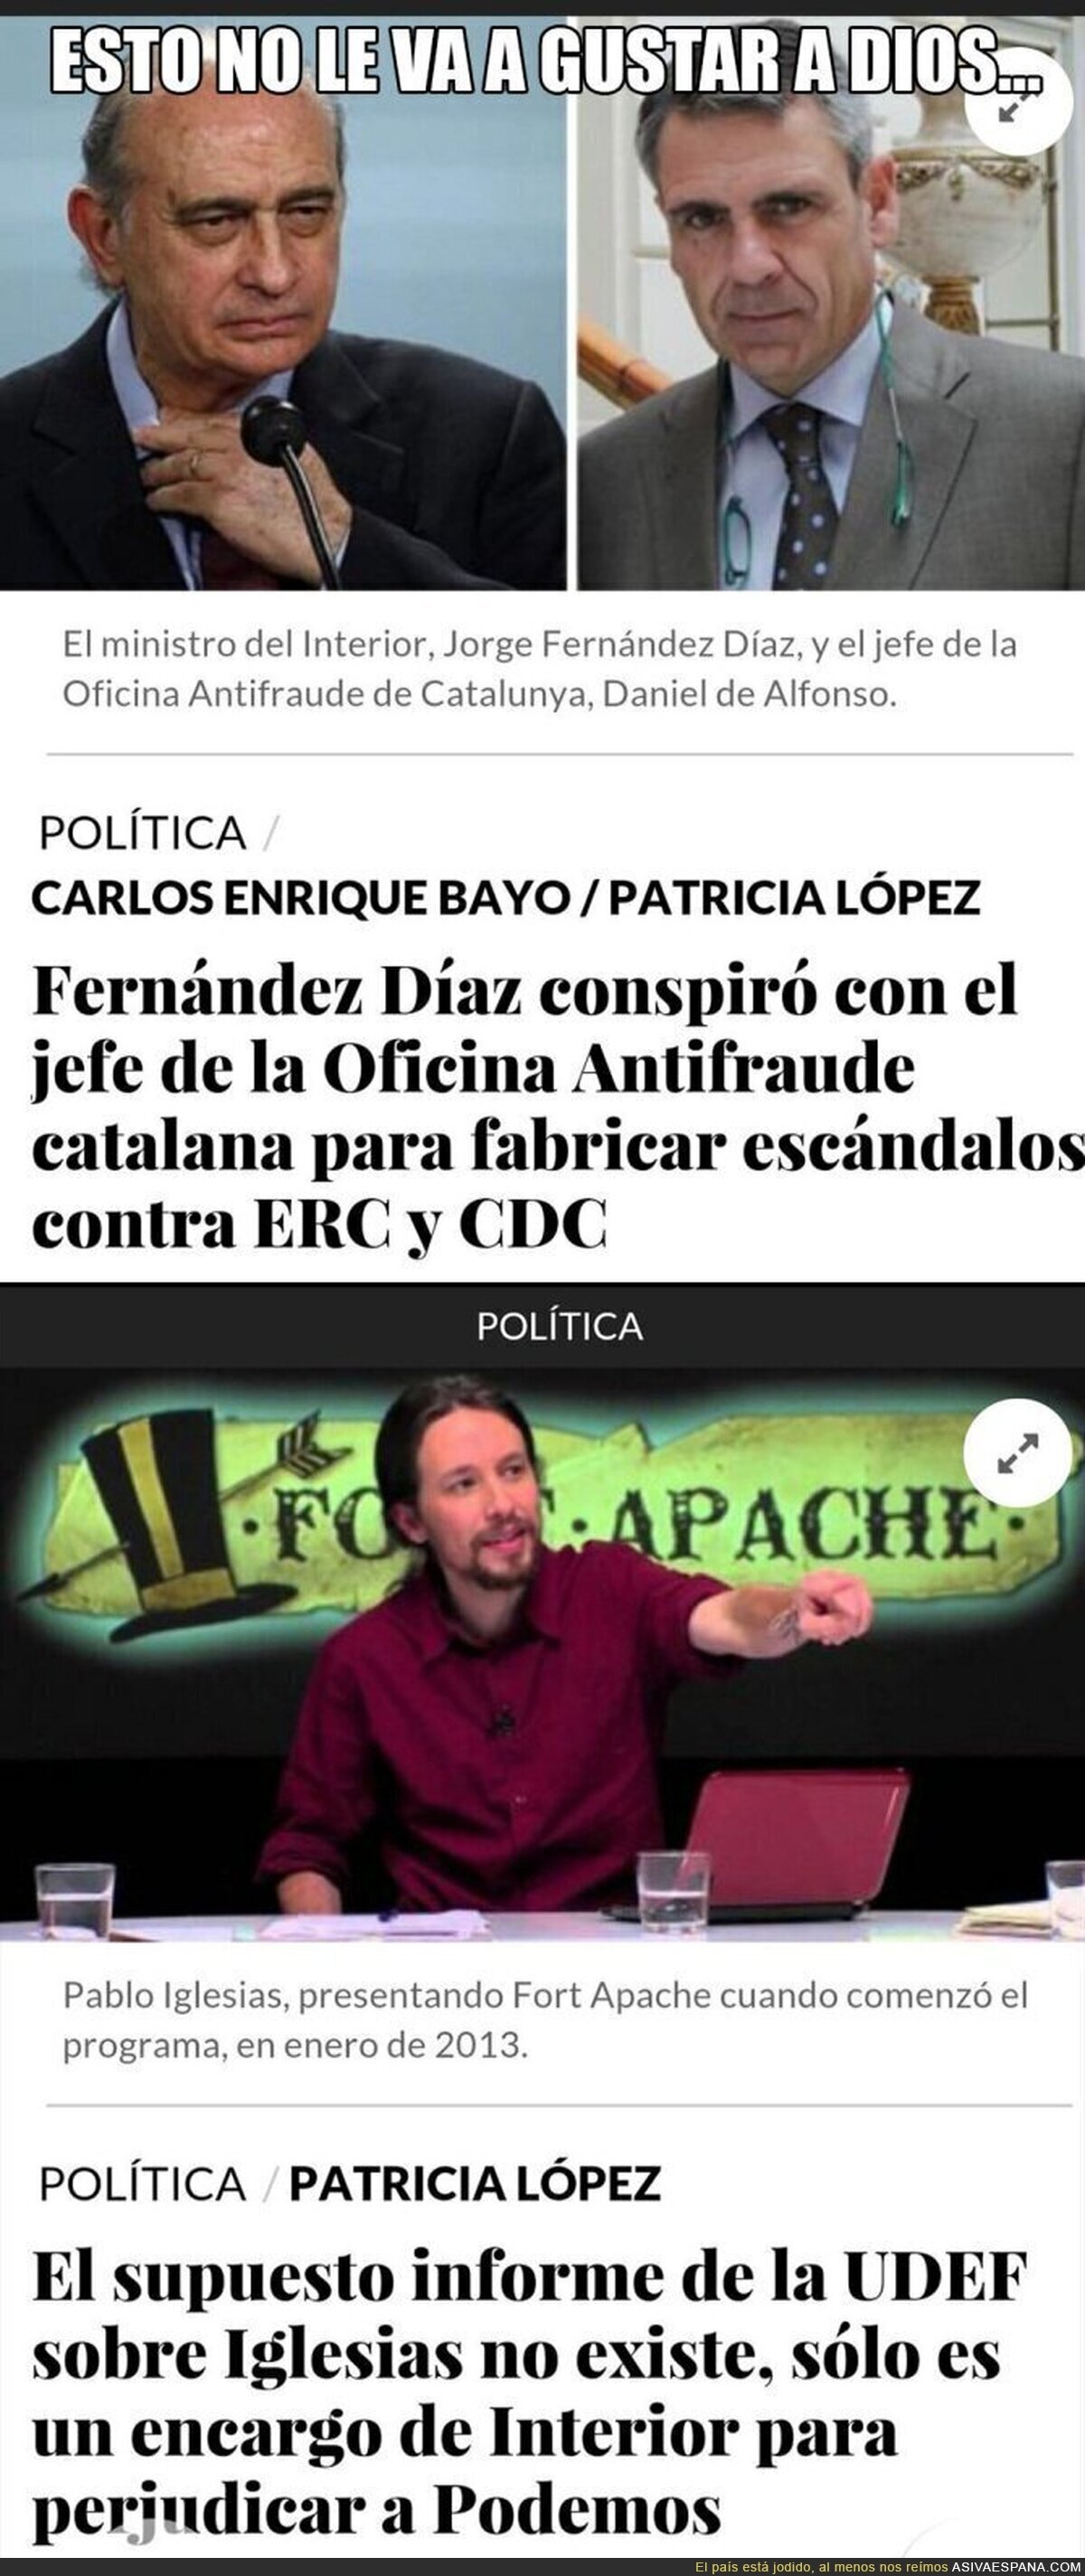 Has pecado muy fuerte Fernández Díaz...